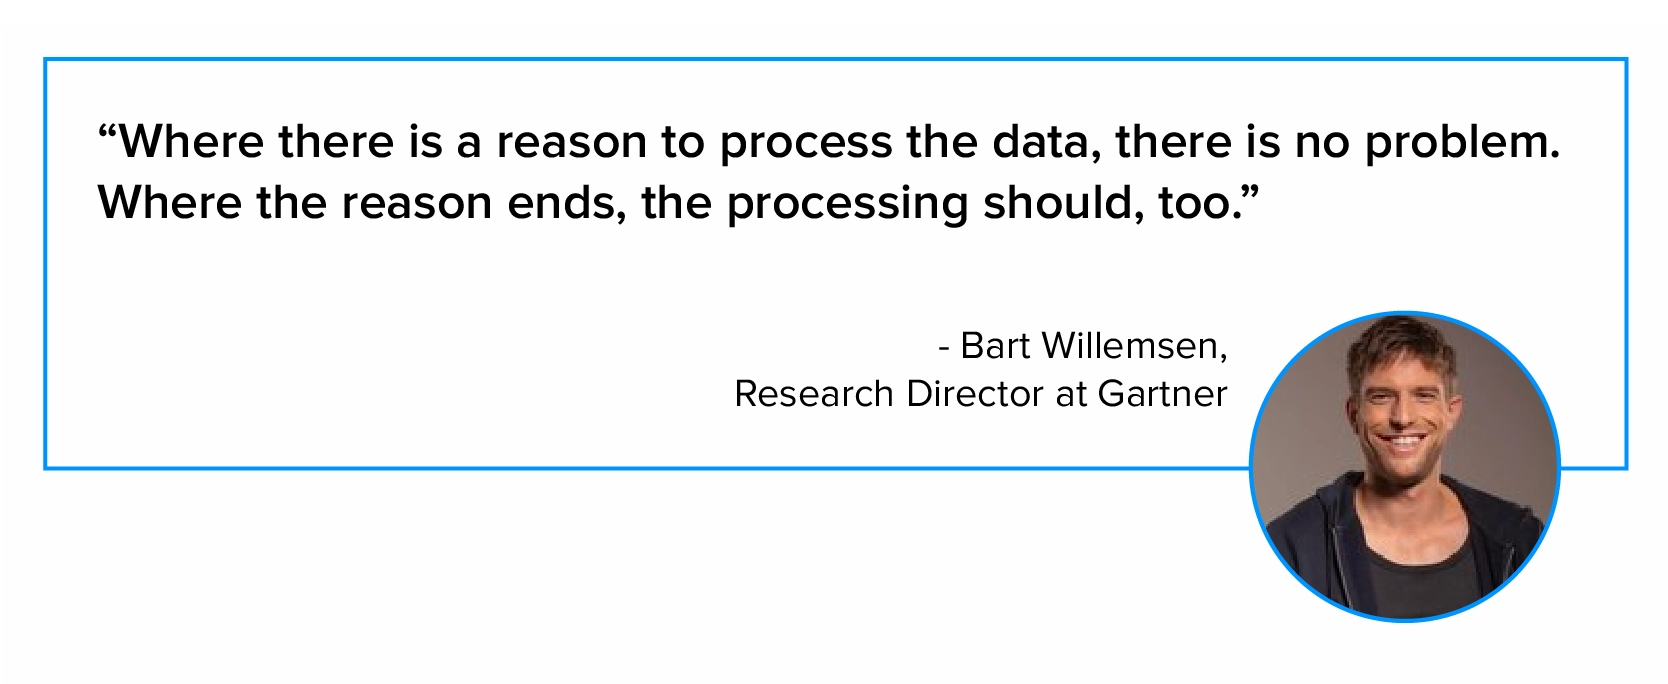 Bart Willemsen によるデータ処理に関する引用